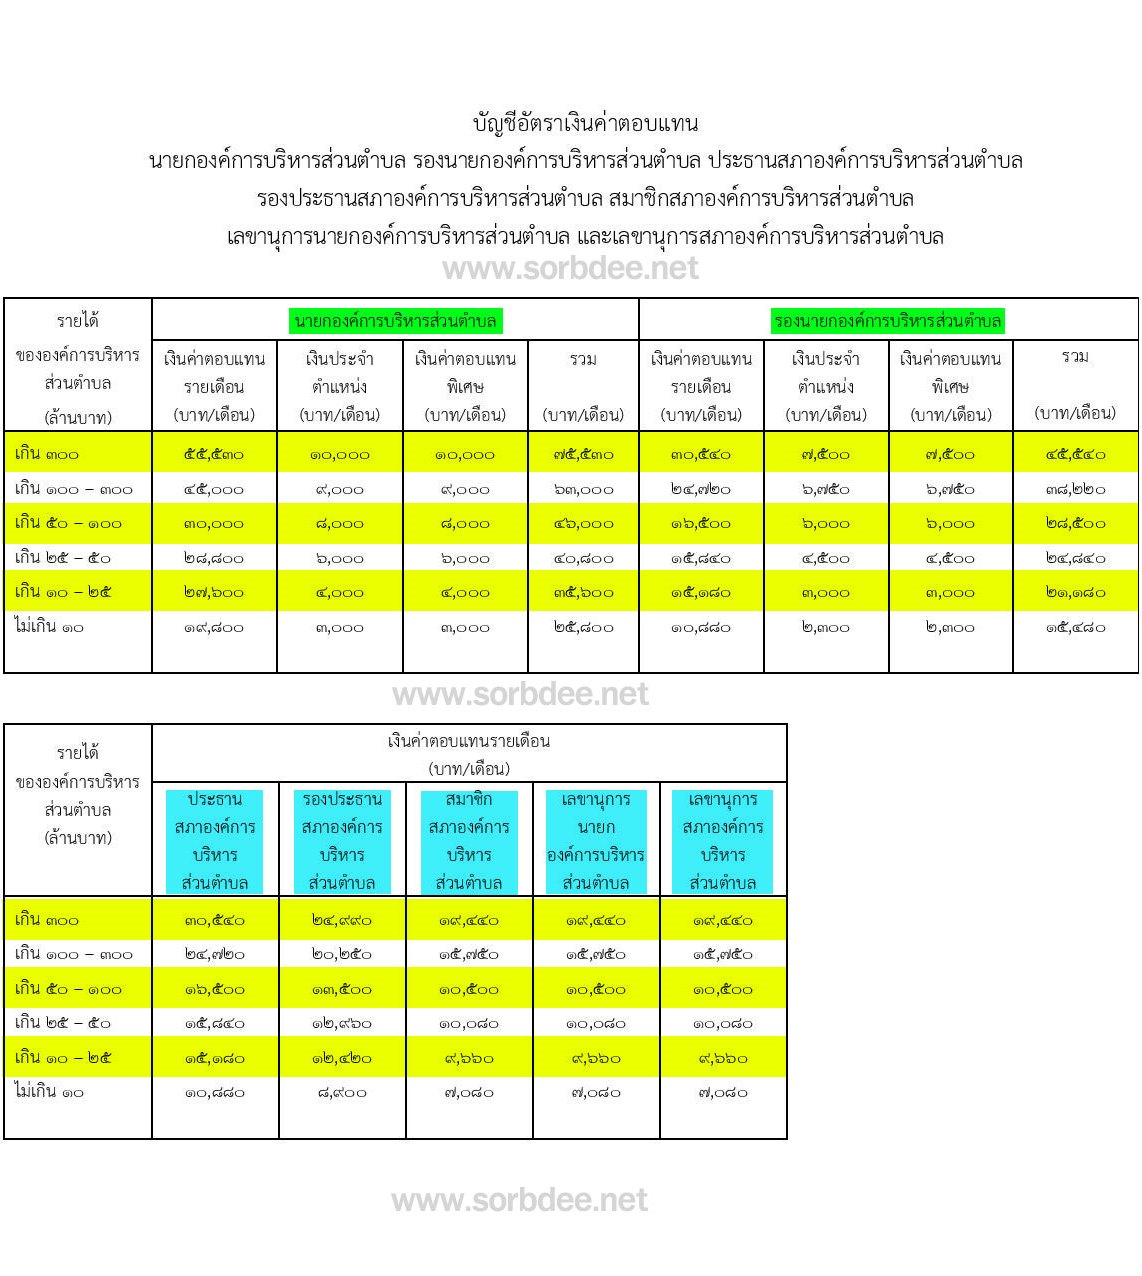 ระเบียบกระทรวงมหาดไทย ว่าด้วยค่าตอบแทนนายกองค์การบริหารส่วนตำบล รองนายกองค์การบริหารส่วนตำบล ประธานองค์การบริหารส่วนตำบล รองประธานสภาองค์การบริหารส่วนตำบล สมาชิกองค์การบริหารส่วนตำบล เลขานุการนายกองค์การบริหารส่วนตำบล และเลขานุการสภาองค์การบริหารส่วนตำบล (ฉบับที่ 3